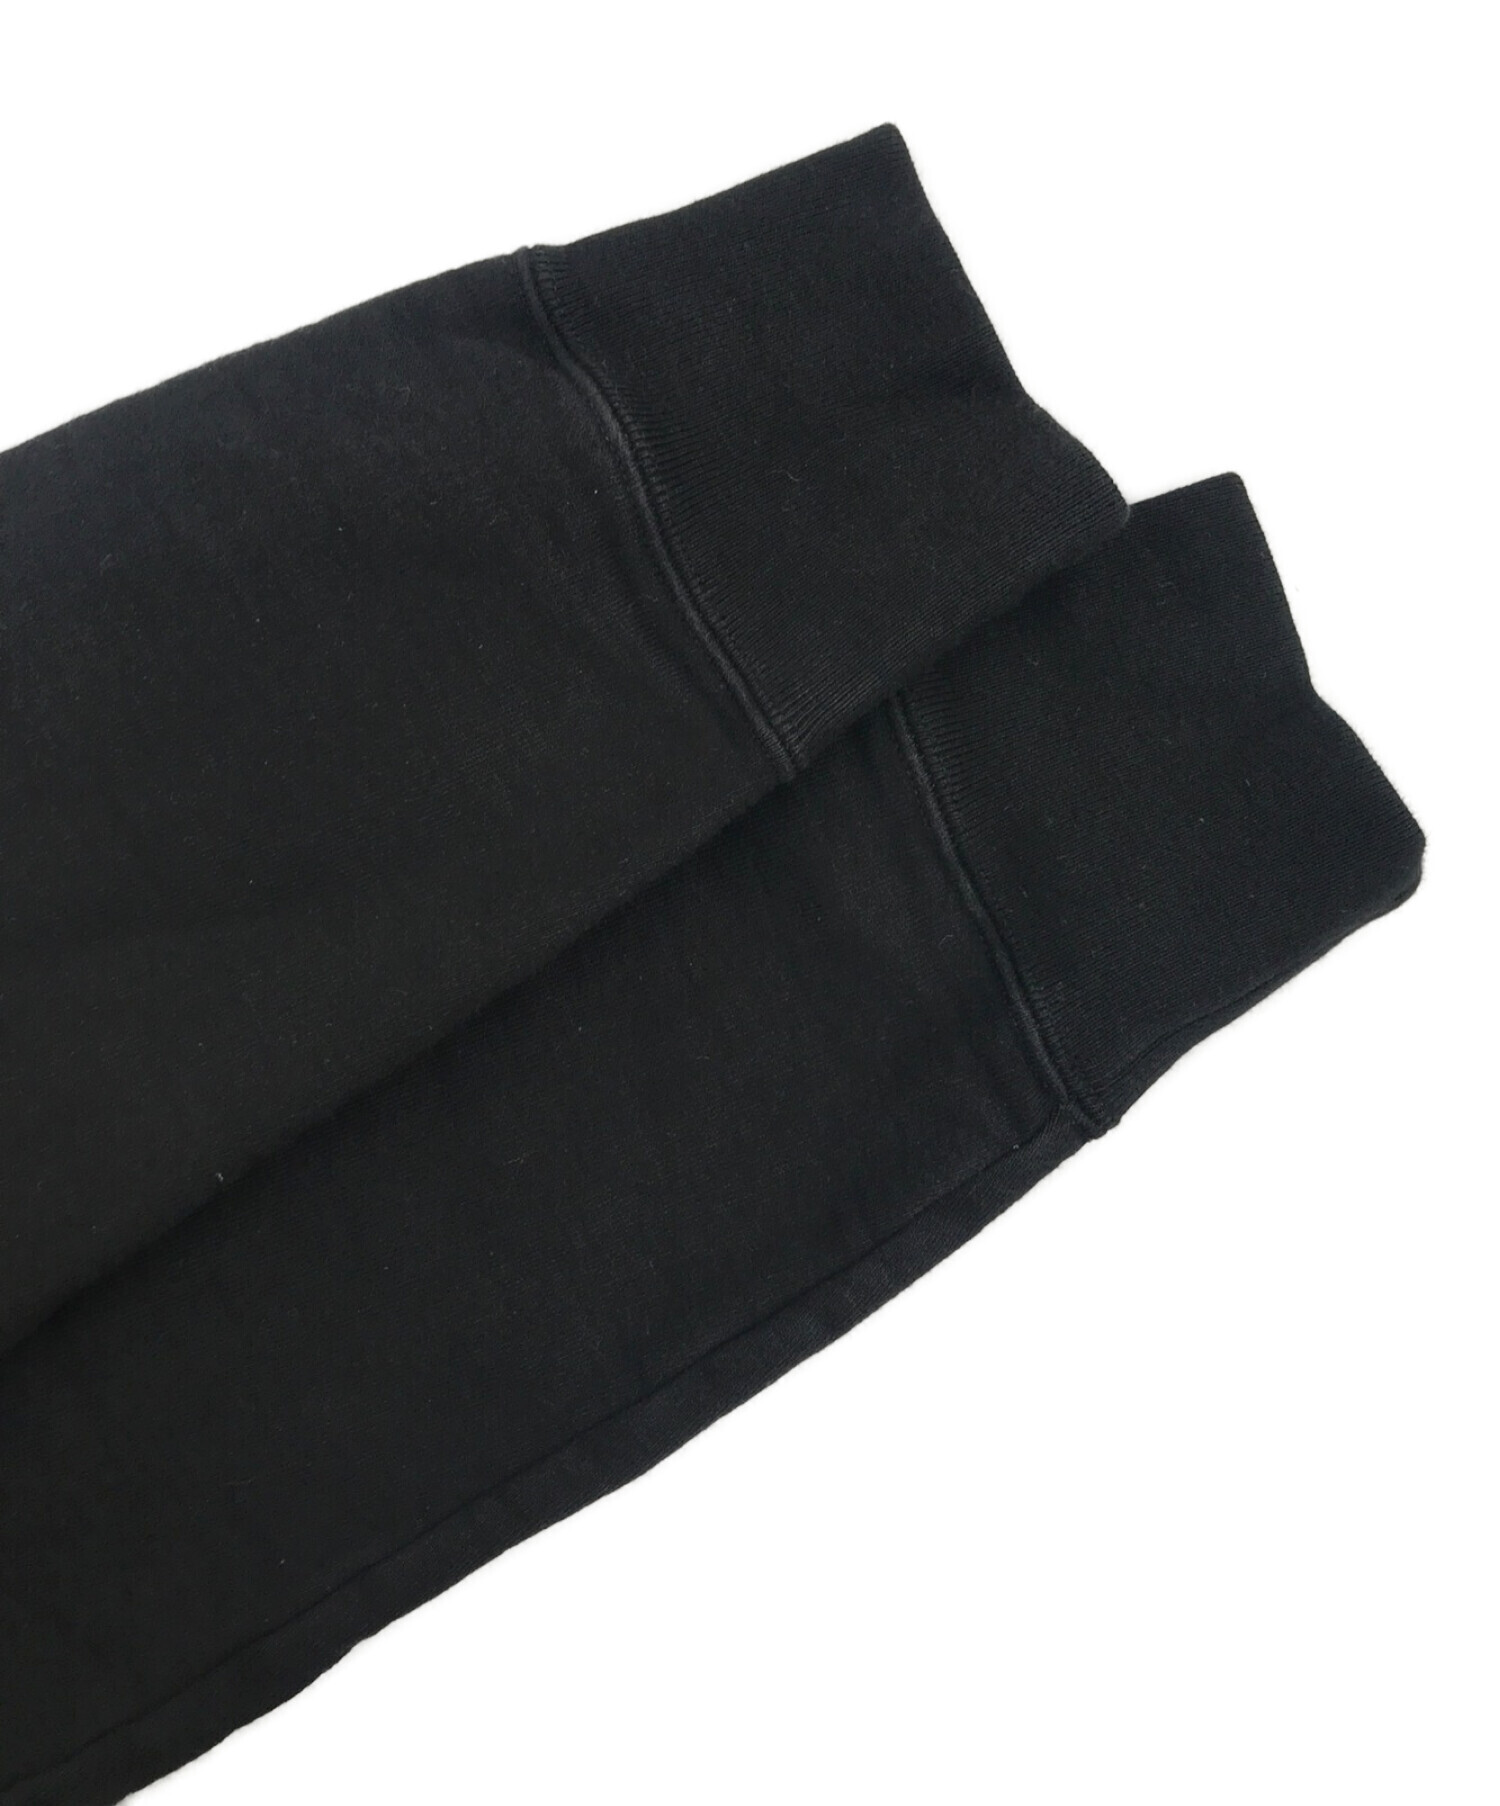 SUPREME (シュプリーム) PANELED HOODED SWEATSHIRT/パネルドフーデッドスウェットシャツ ブラック サイズ:S